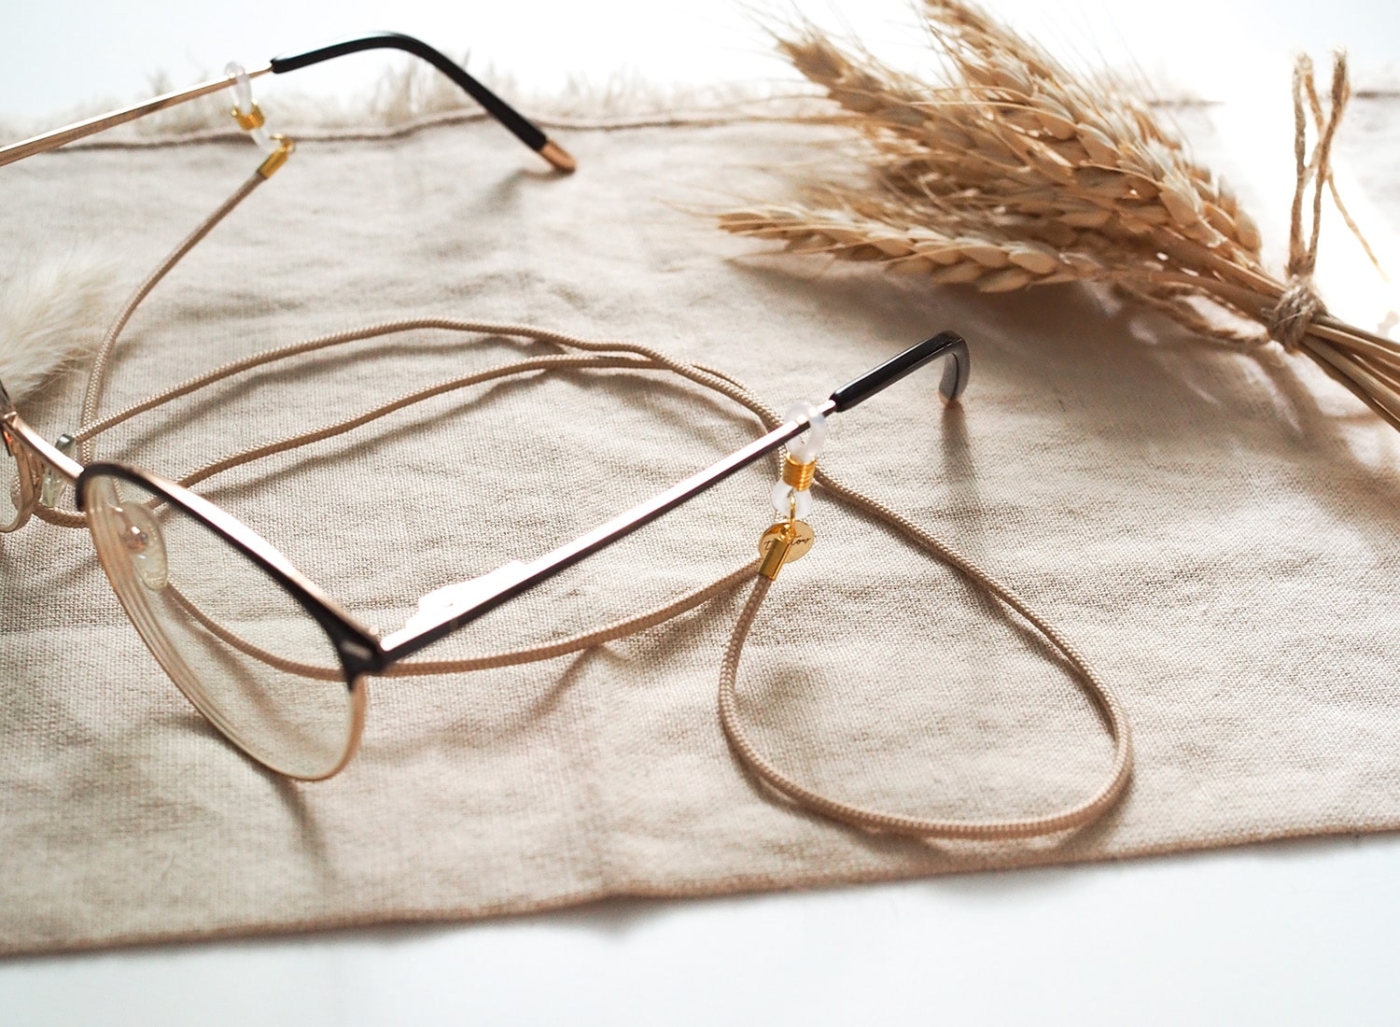 Brillenband in beige mit goldenen Details an Brille.